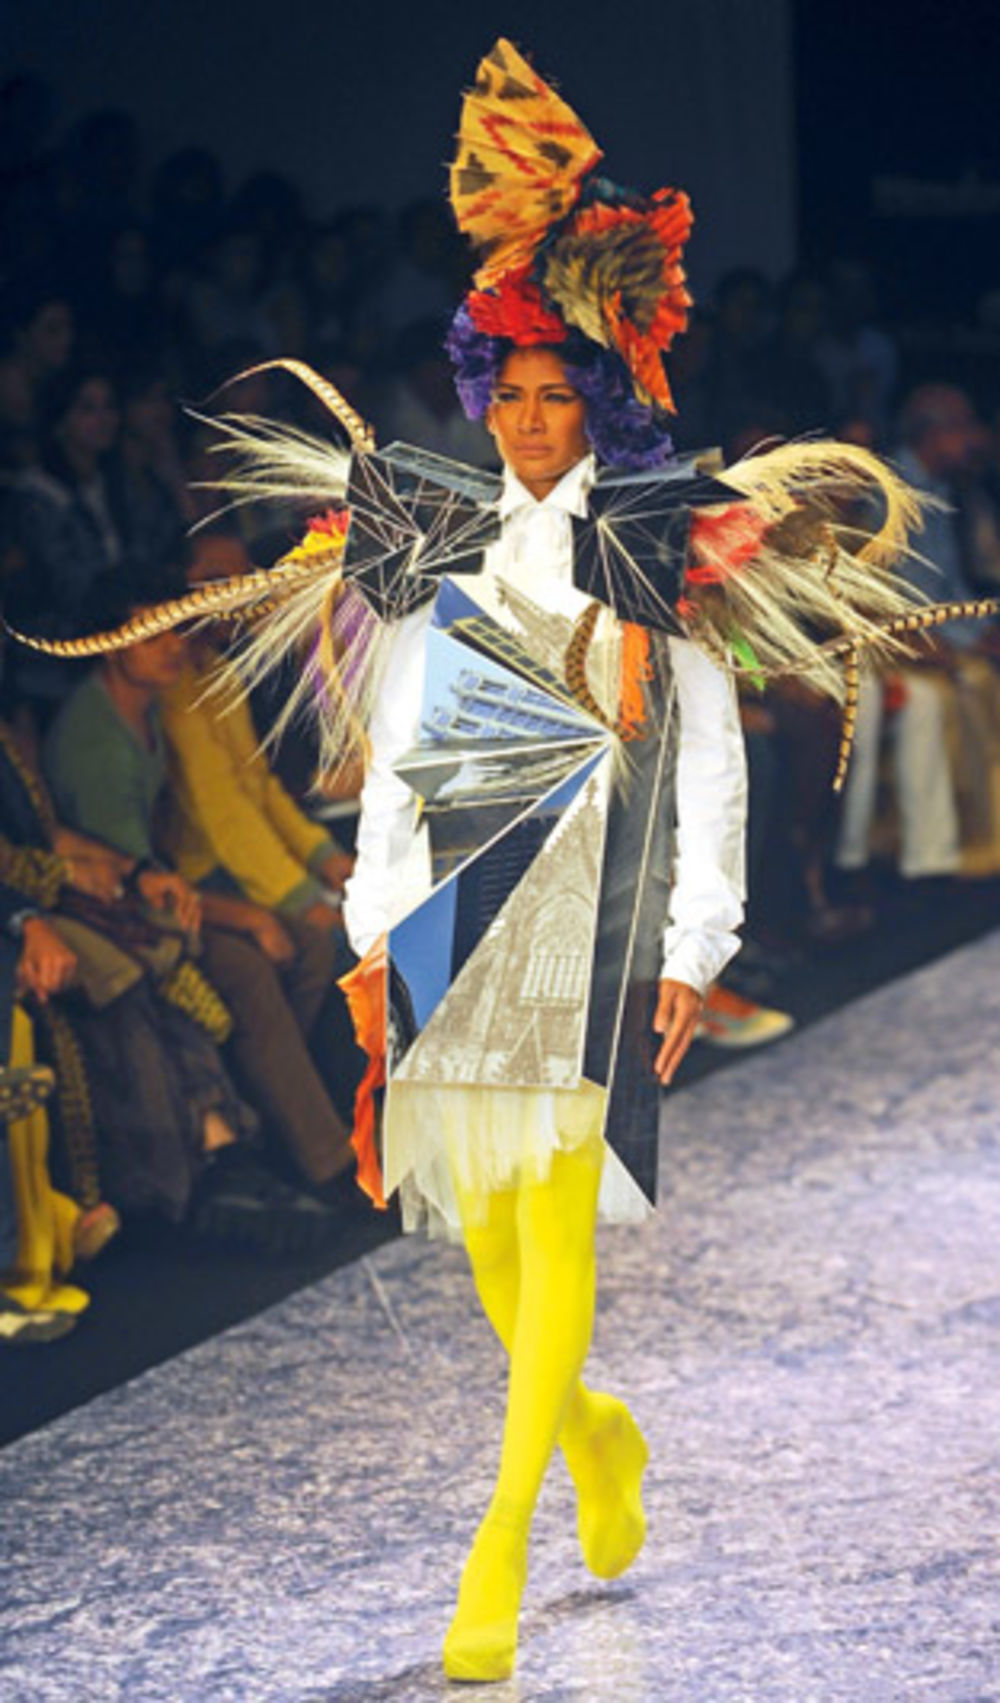 Na Nedelji visoke mode u Mumbaju, indijski kreatori potrudili su se da spoje tradicionalne i moderne detalje, posebno insistirajući na tome da kreacije budu optočene raskošnim detaljima